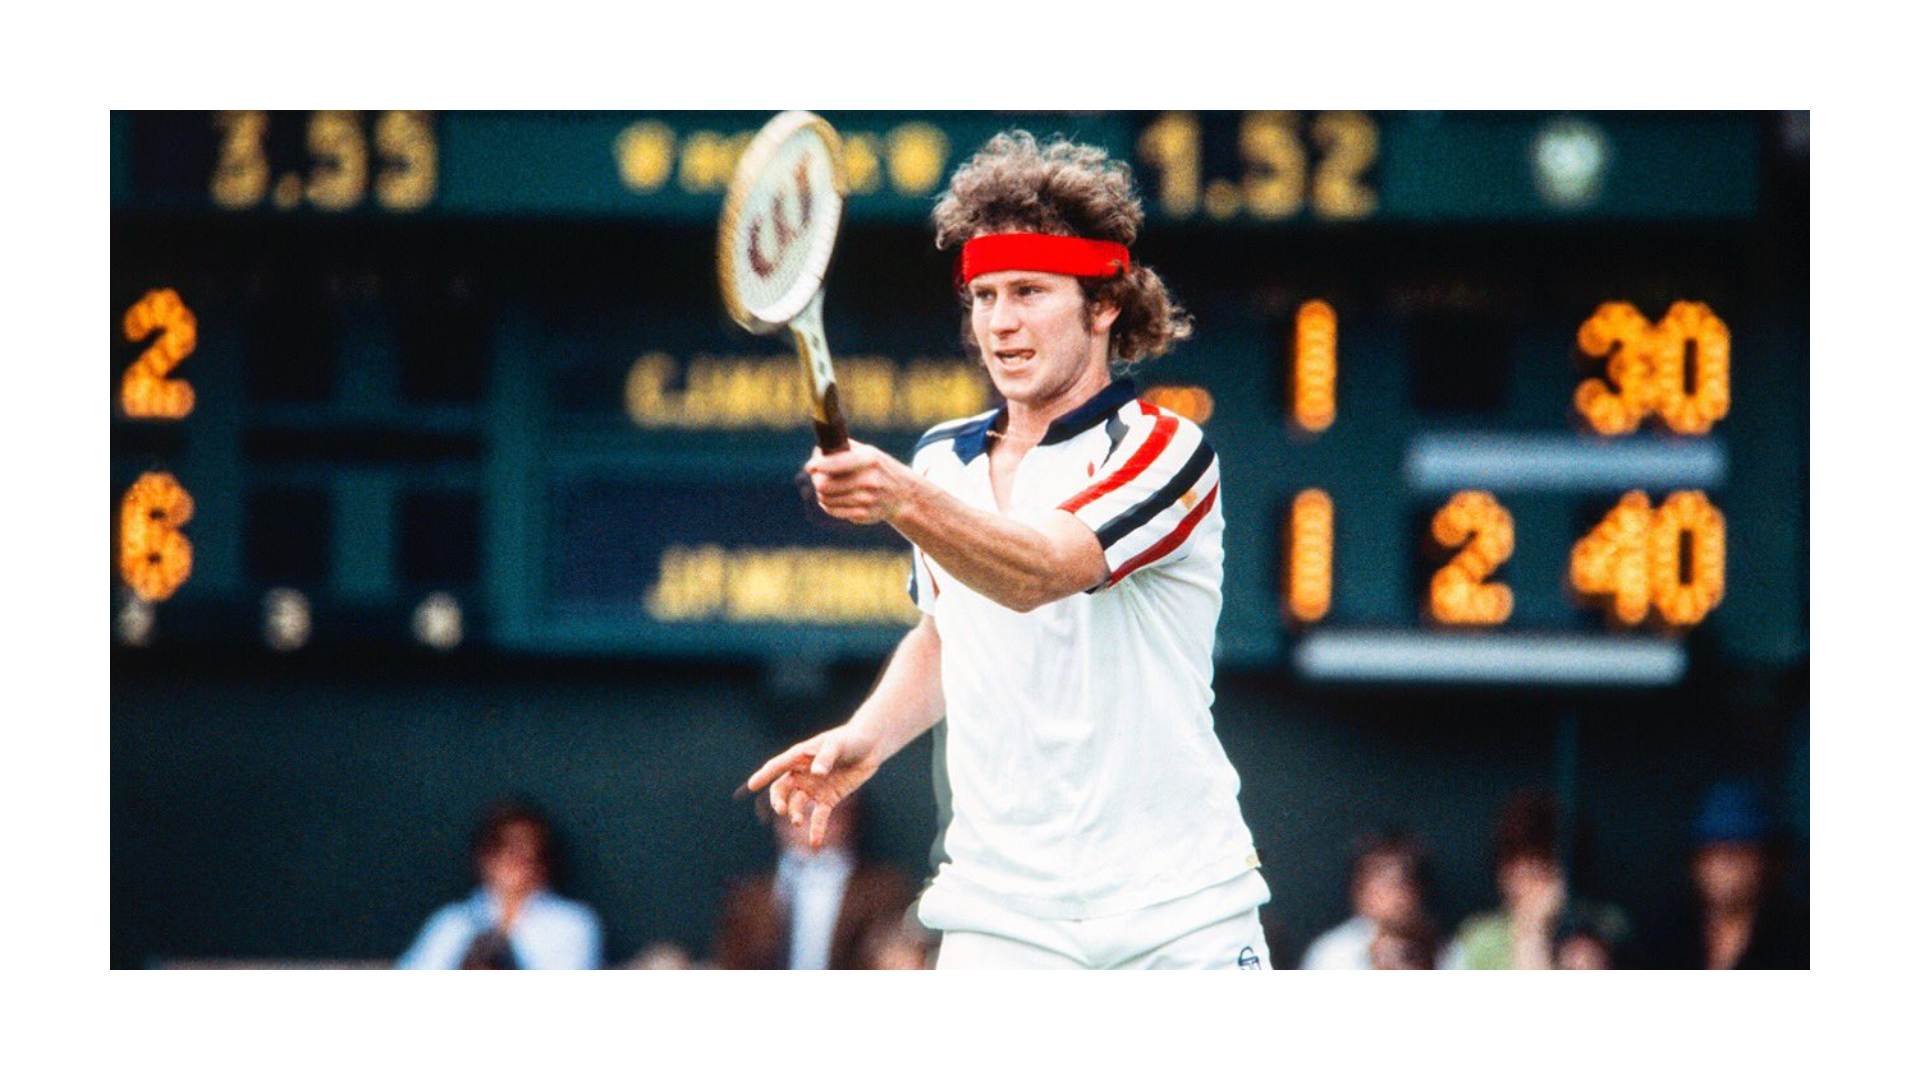 John McEnroe file photo; Credit: Wimbledon Twitter page